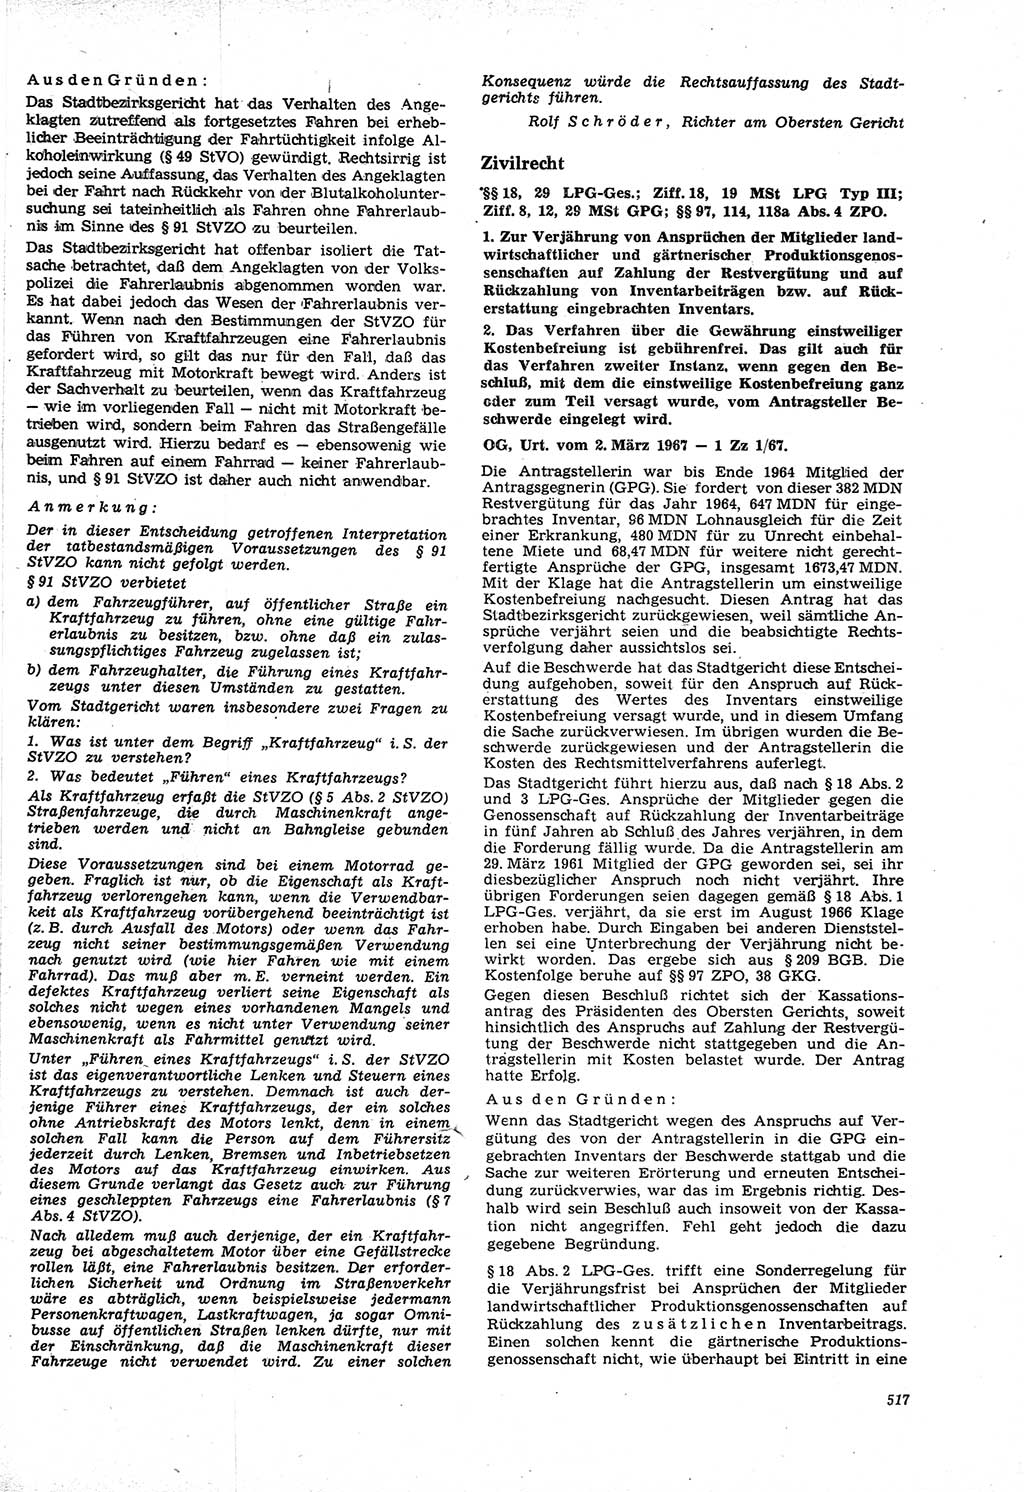 Neue Justiz (NJ), Zeitschrift für Recht und Rechtswissenschaft [Deutsche Demokratische Republik (DDR)], 21. Jahrgang 1967, Seite 517 (NJ DDR 1967, S. 517)